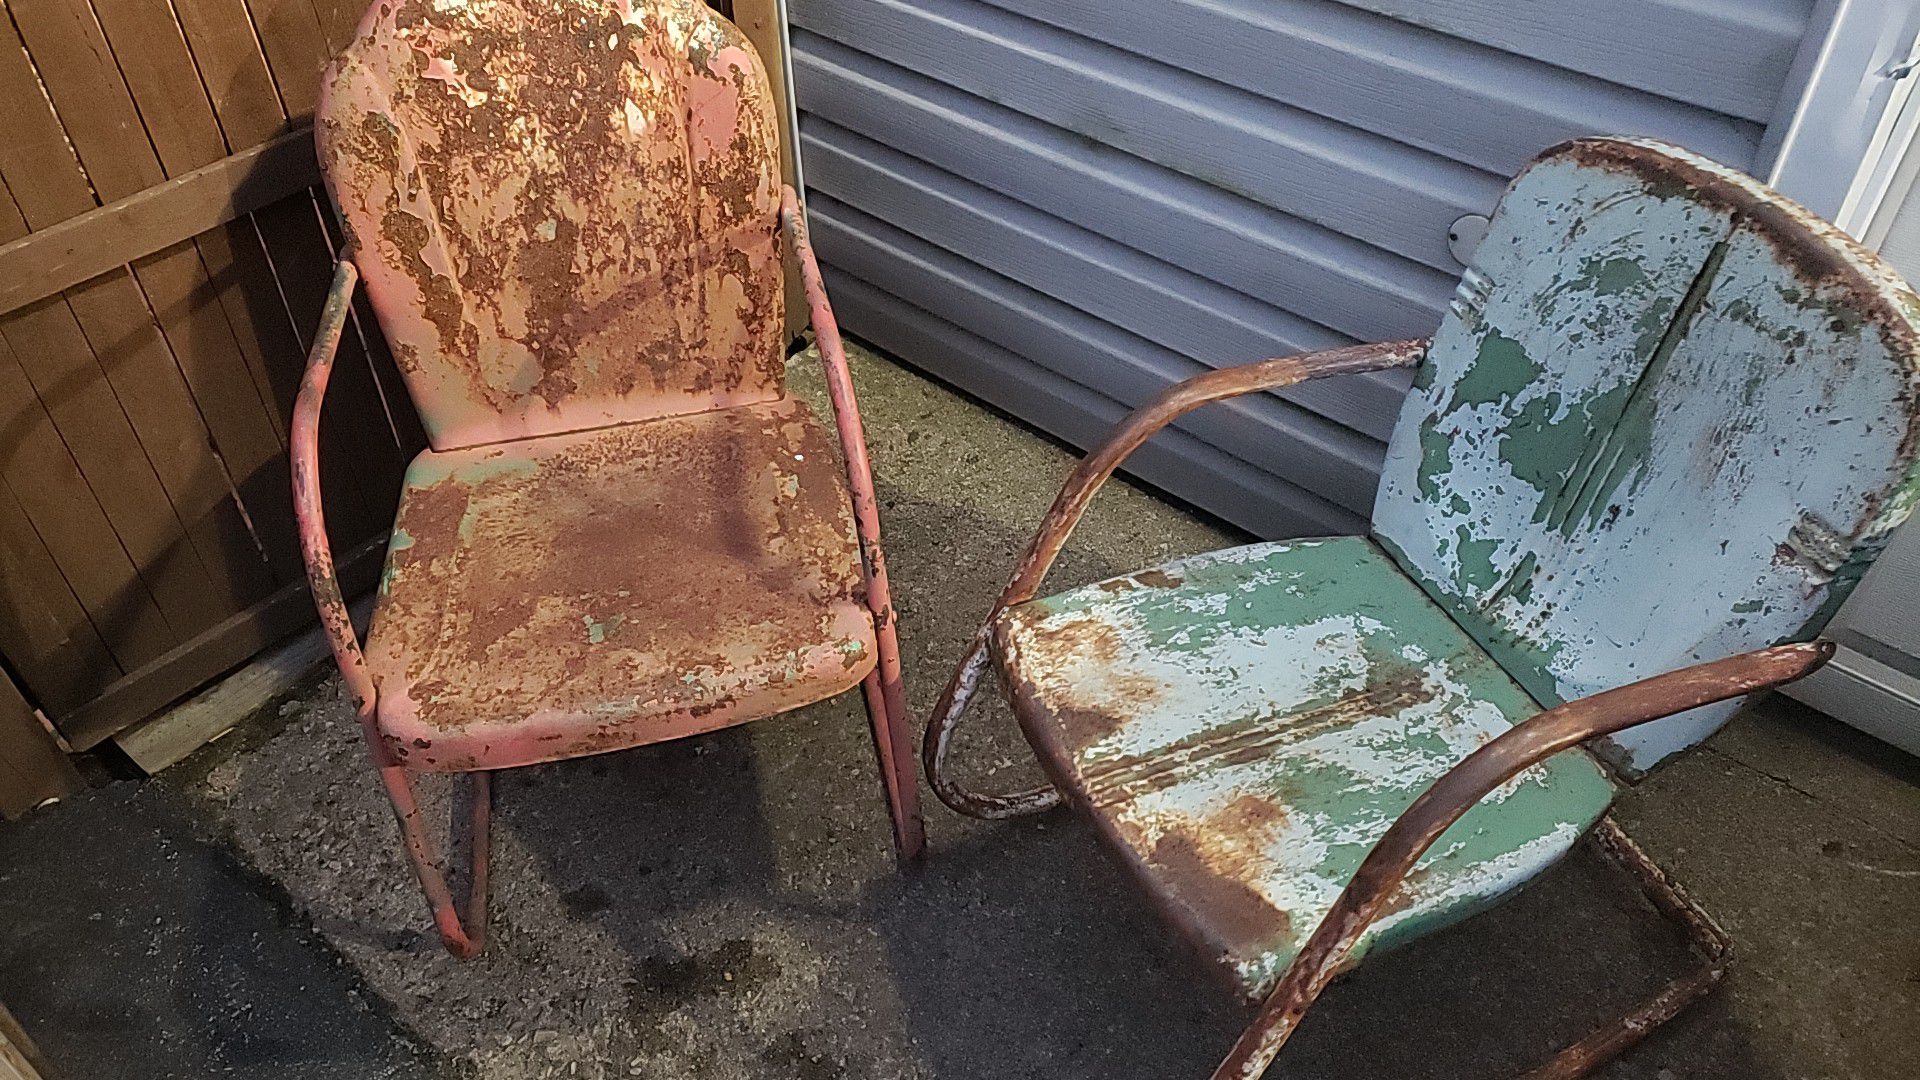 Pair of Vintage Metal Lawn Chairs